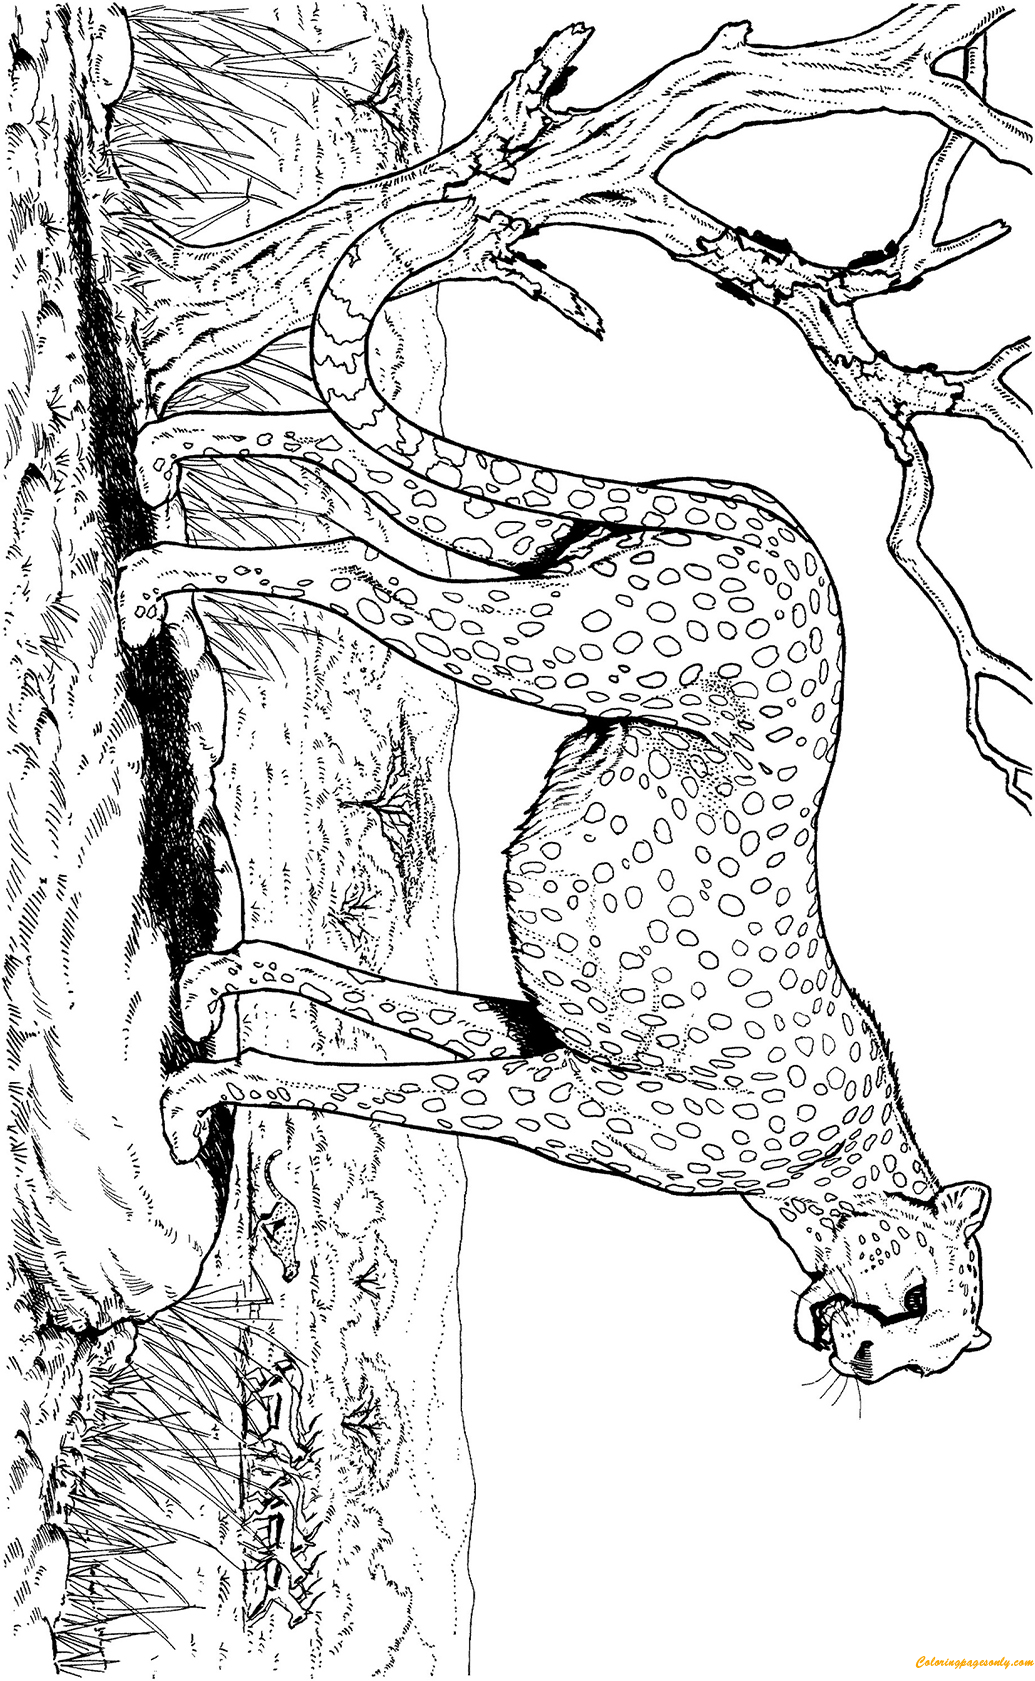 Гепард в природе Животное из Харда